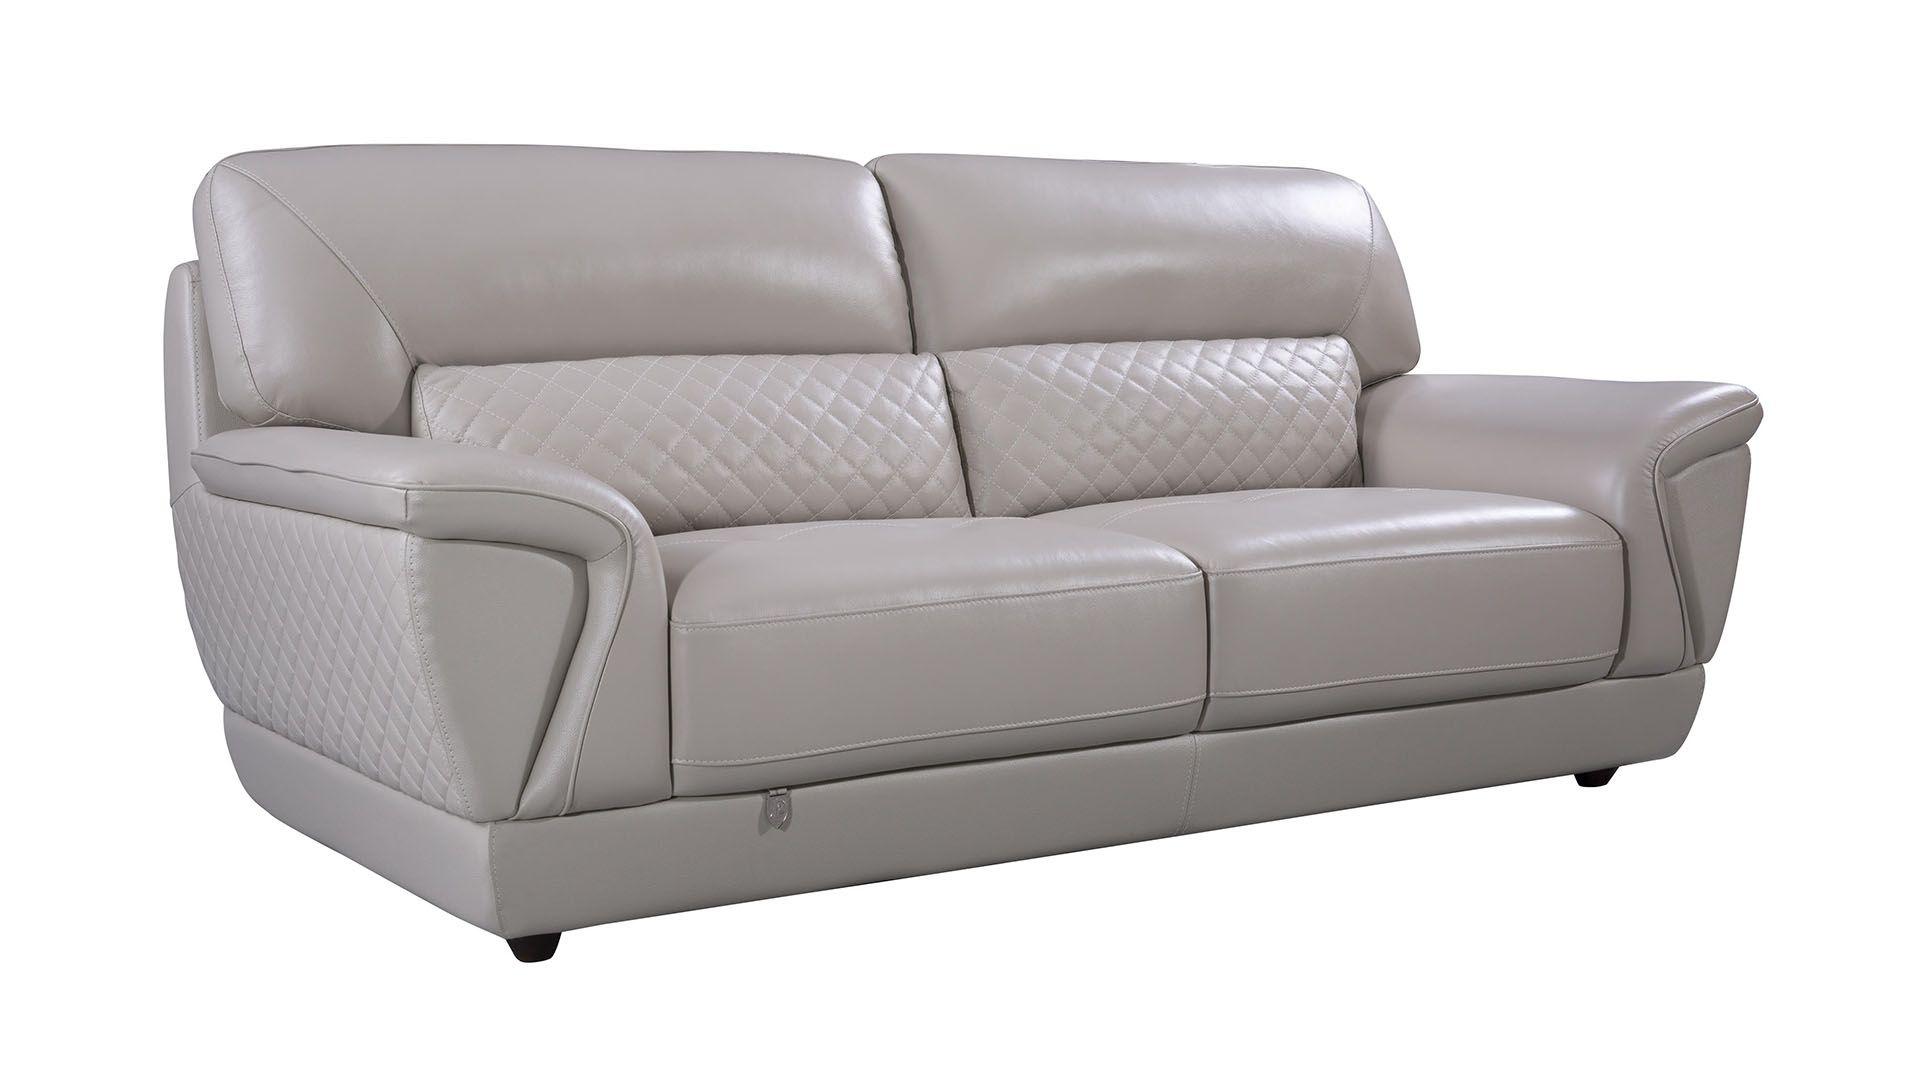 Contemporary, Modern Sofa EK099-LG-SF EK099-LG-SF in Light Gray Italian Leather